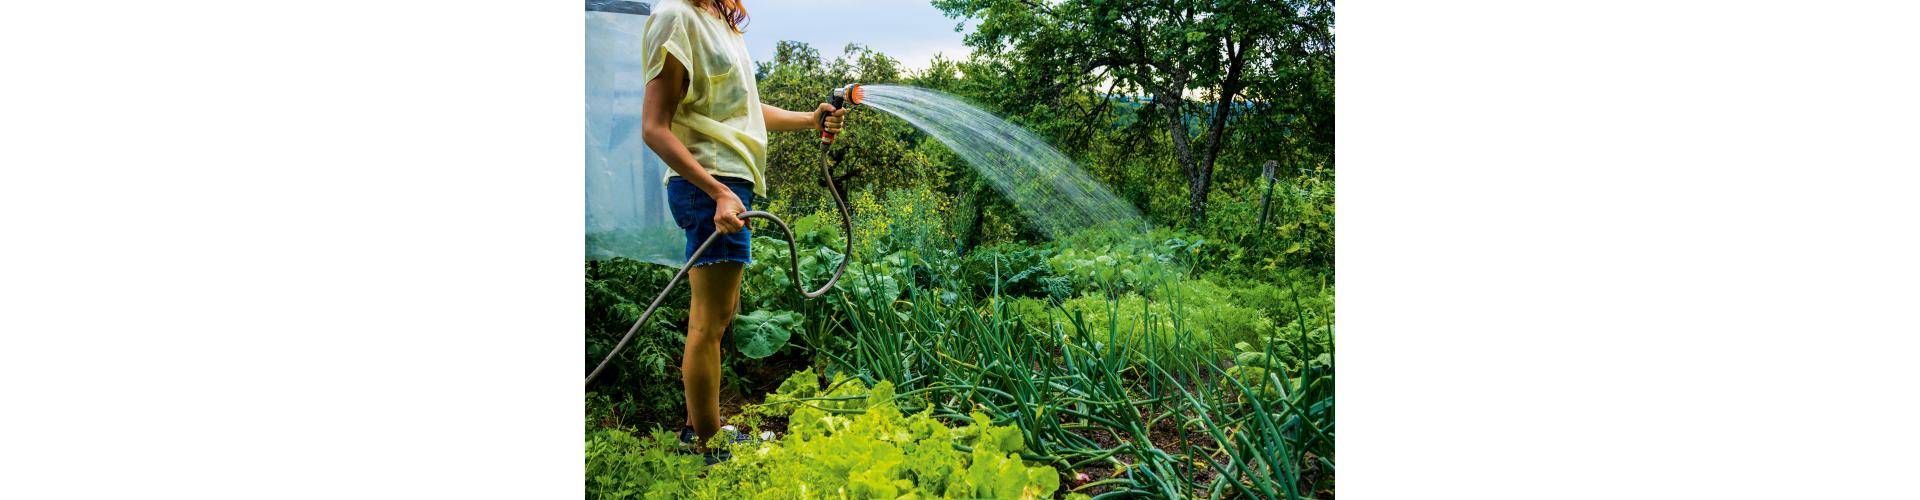 Можно ли поливать водой из бассейна огород, газон, цветы | 5domov.ru - статьи о строительстве, ремонте, отделке домов и квартир